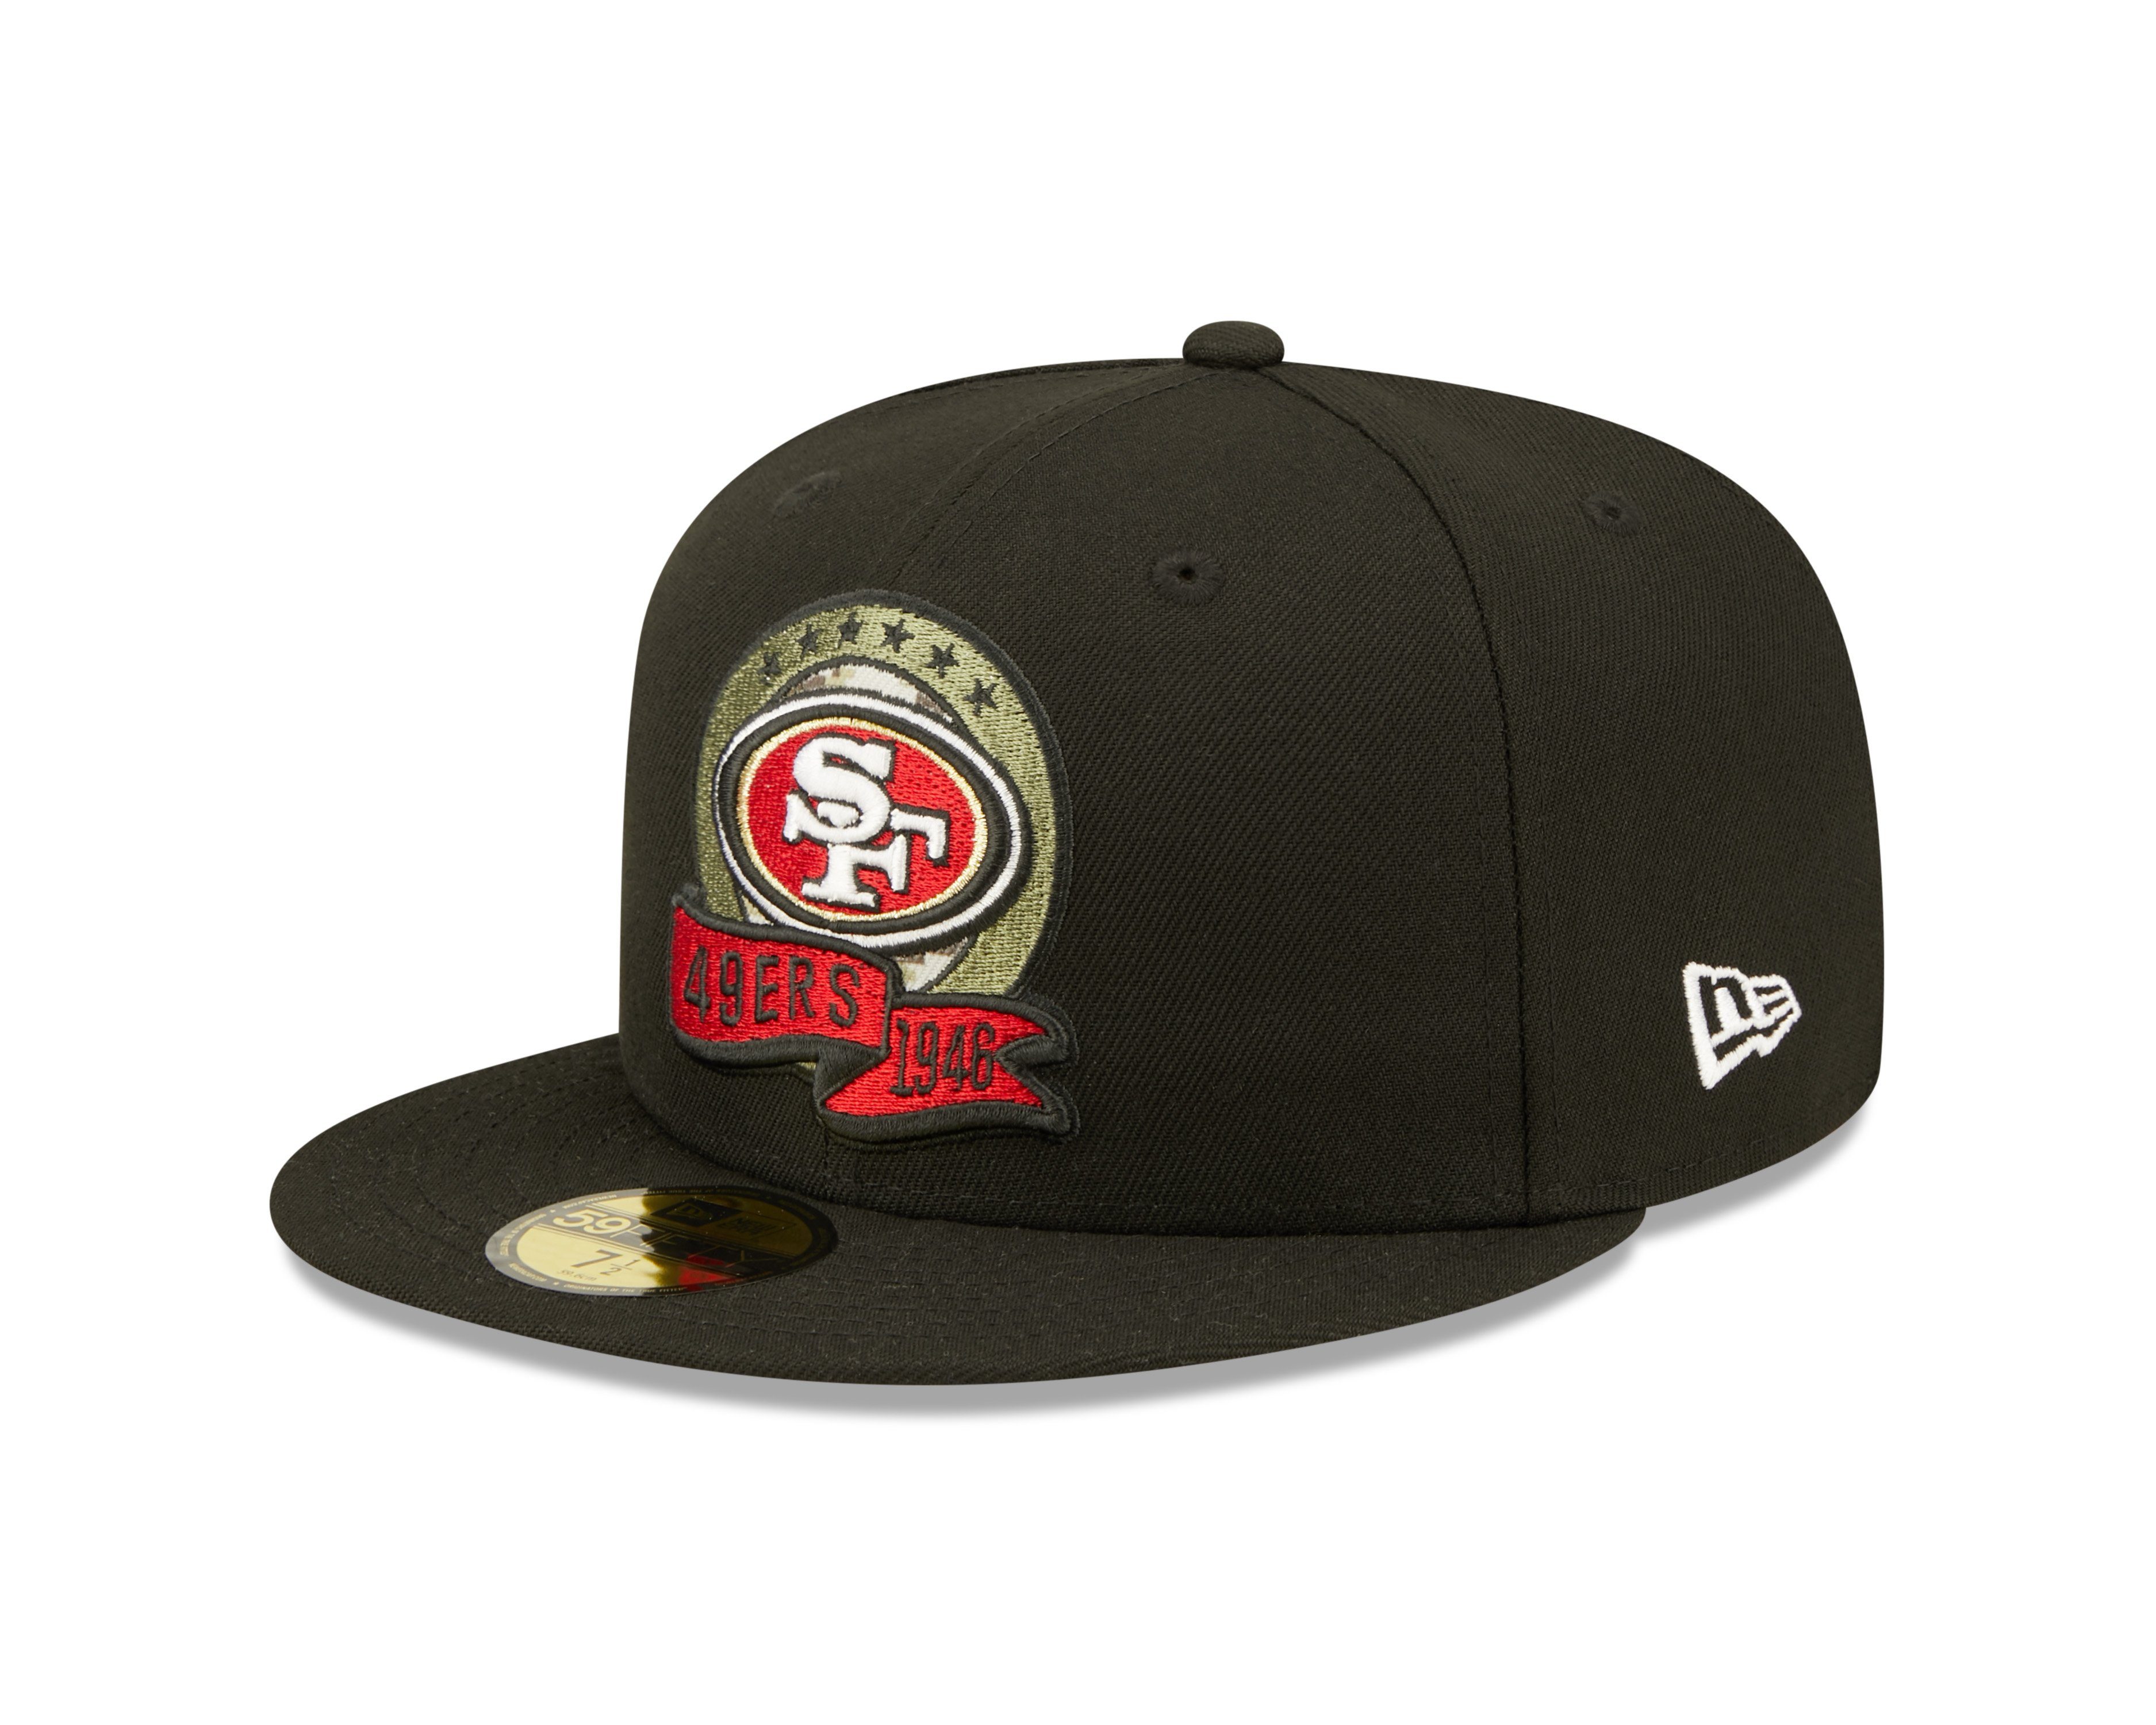 New Era Baseball Cap Cap New Era SF 49ERS 1946 (1-St)